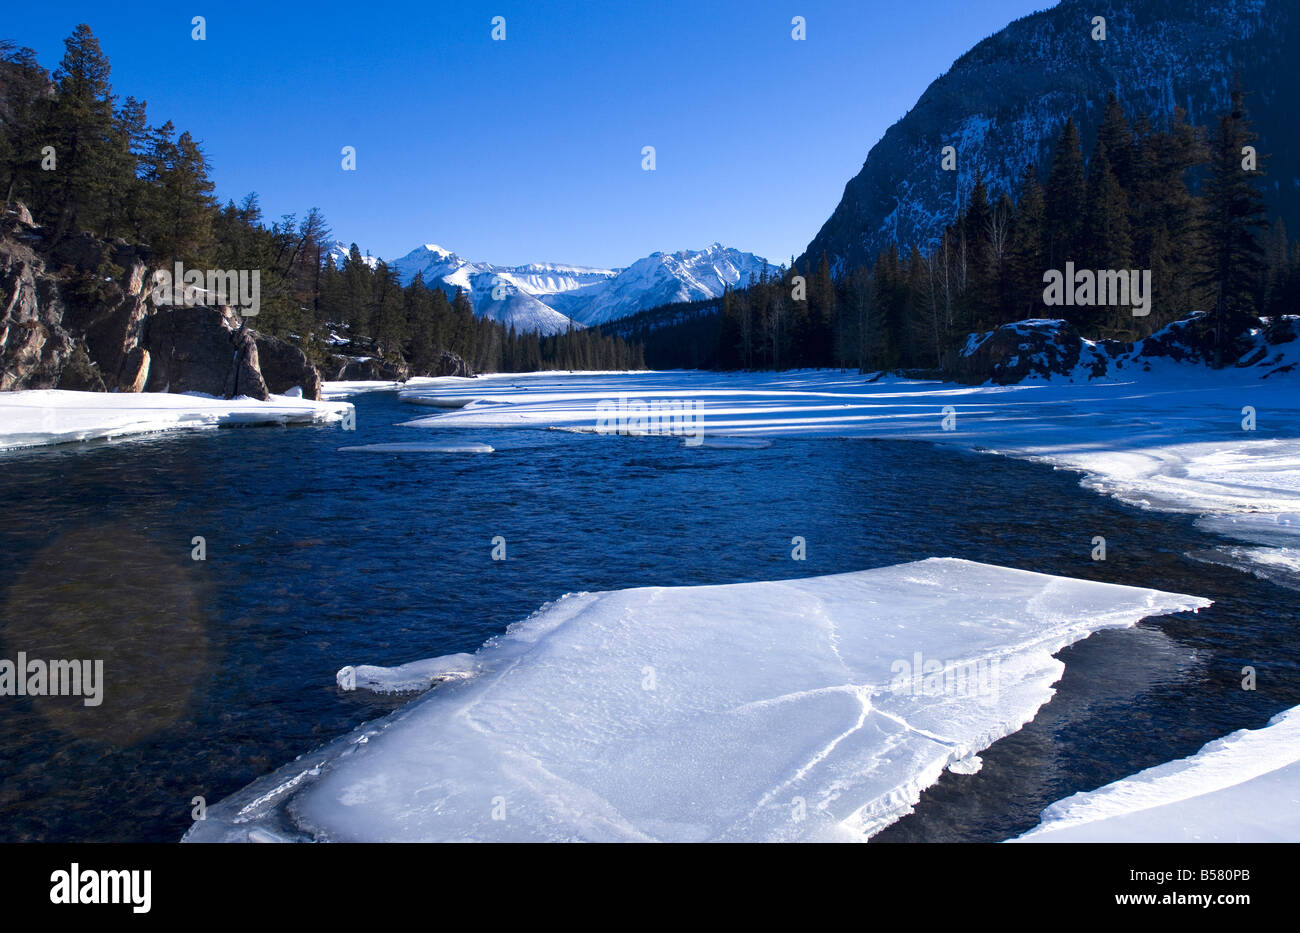 La rivière Bow congelé, Banff, Alberta, Canada, Amérique du Nord Banque D'Images